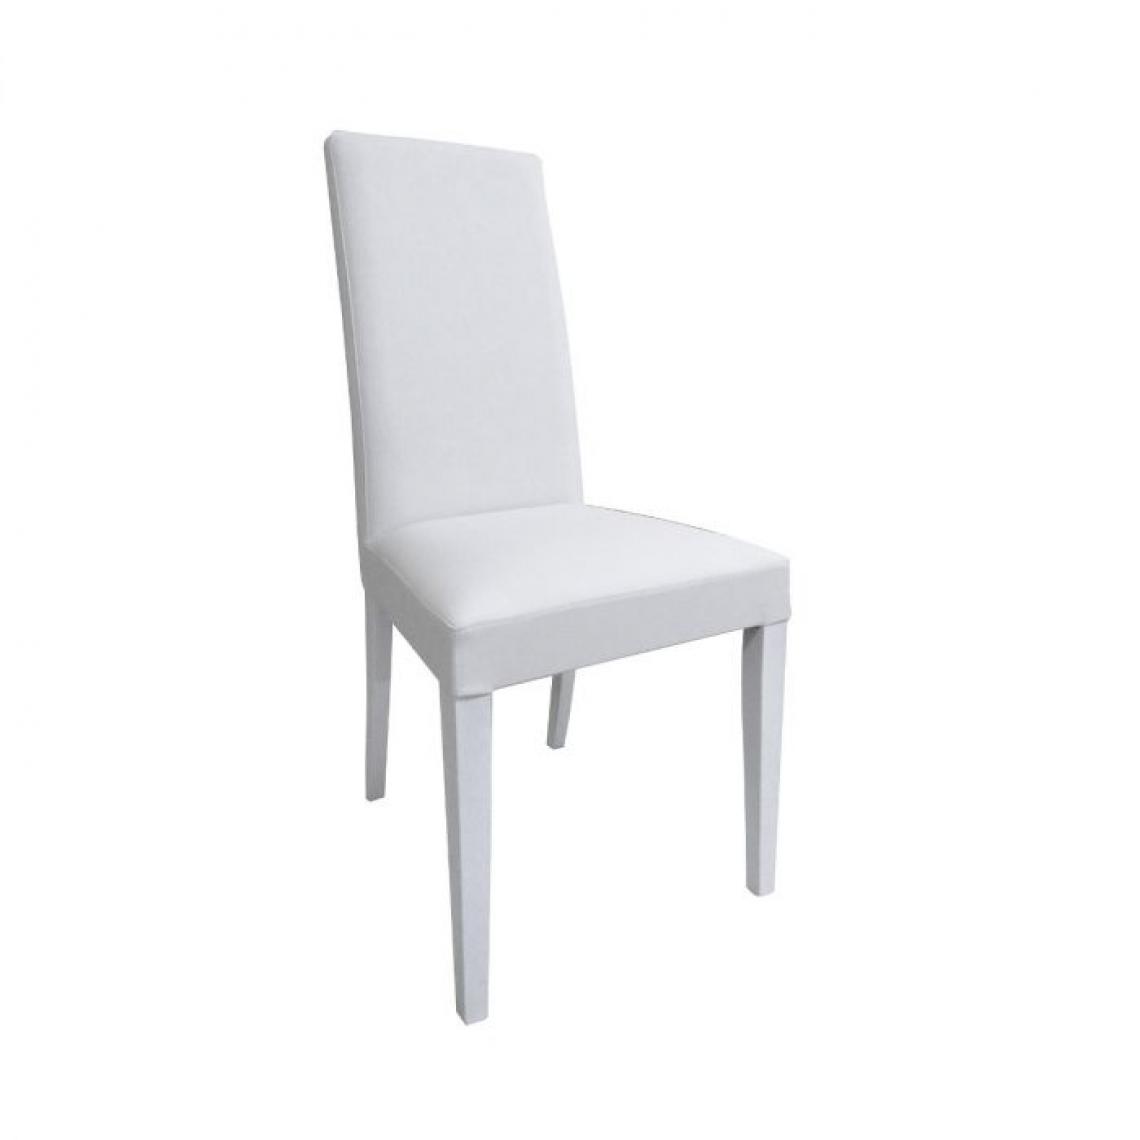 Alter - Chaise classique rembourrée en similicuir avec pieds en bois, Fauteuil pour salle à manger, Fabriqué en Italie, 46x54h98, Couleur Blanc - Chaises